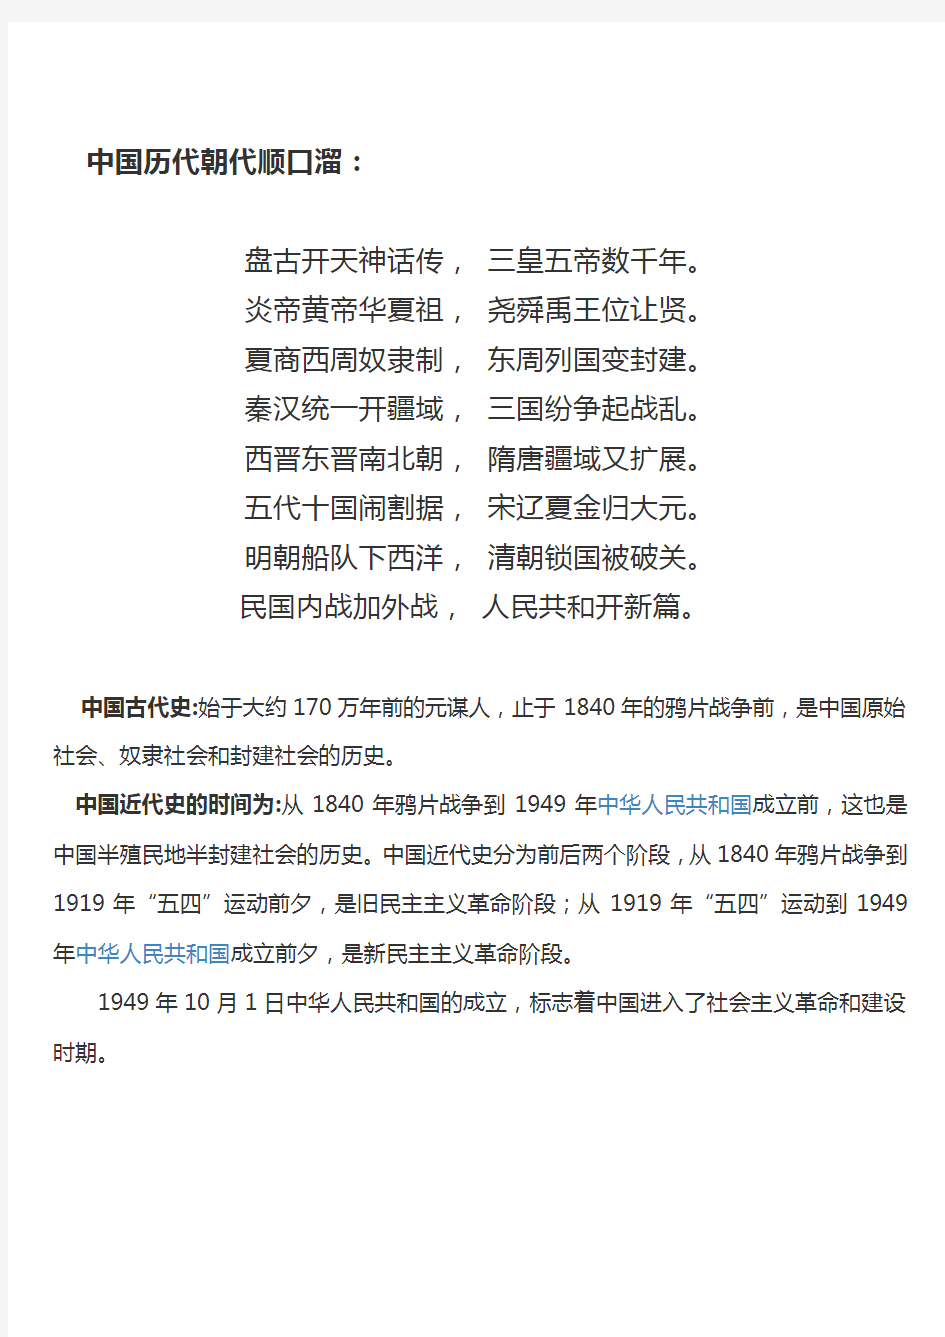 (完整版)中国历史朝代年表